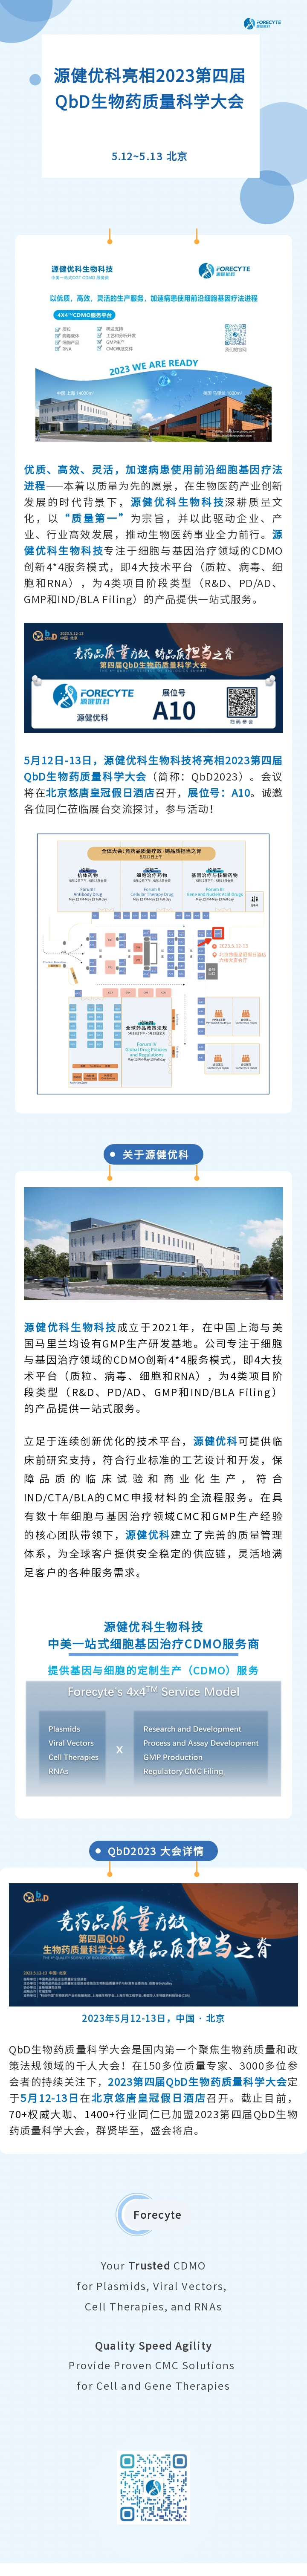 五月京城相约 | 源健优科亮相2023第四届QbD生物药质量科学大会！ 